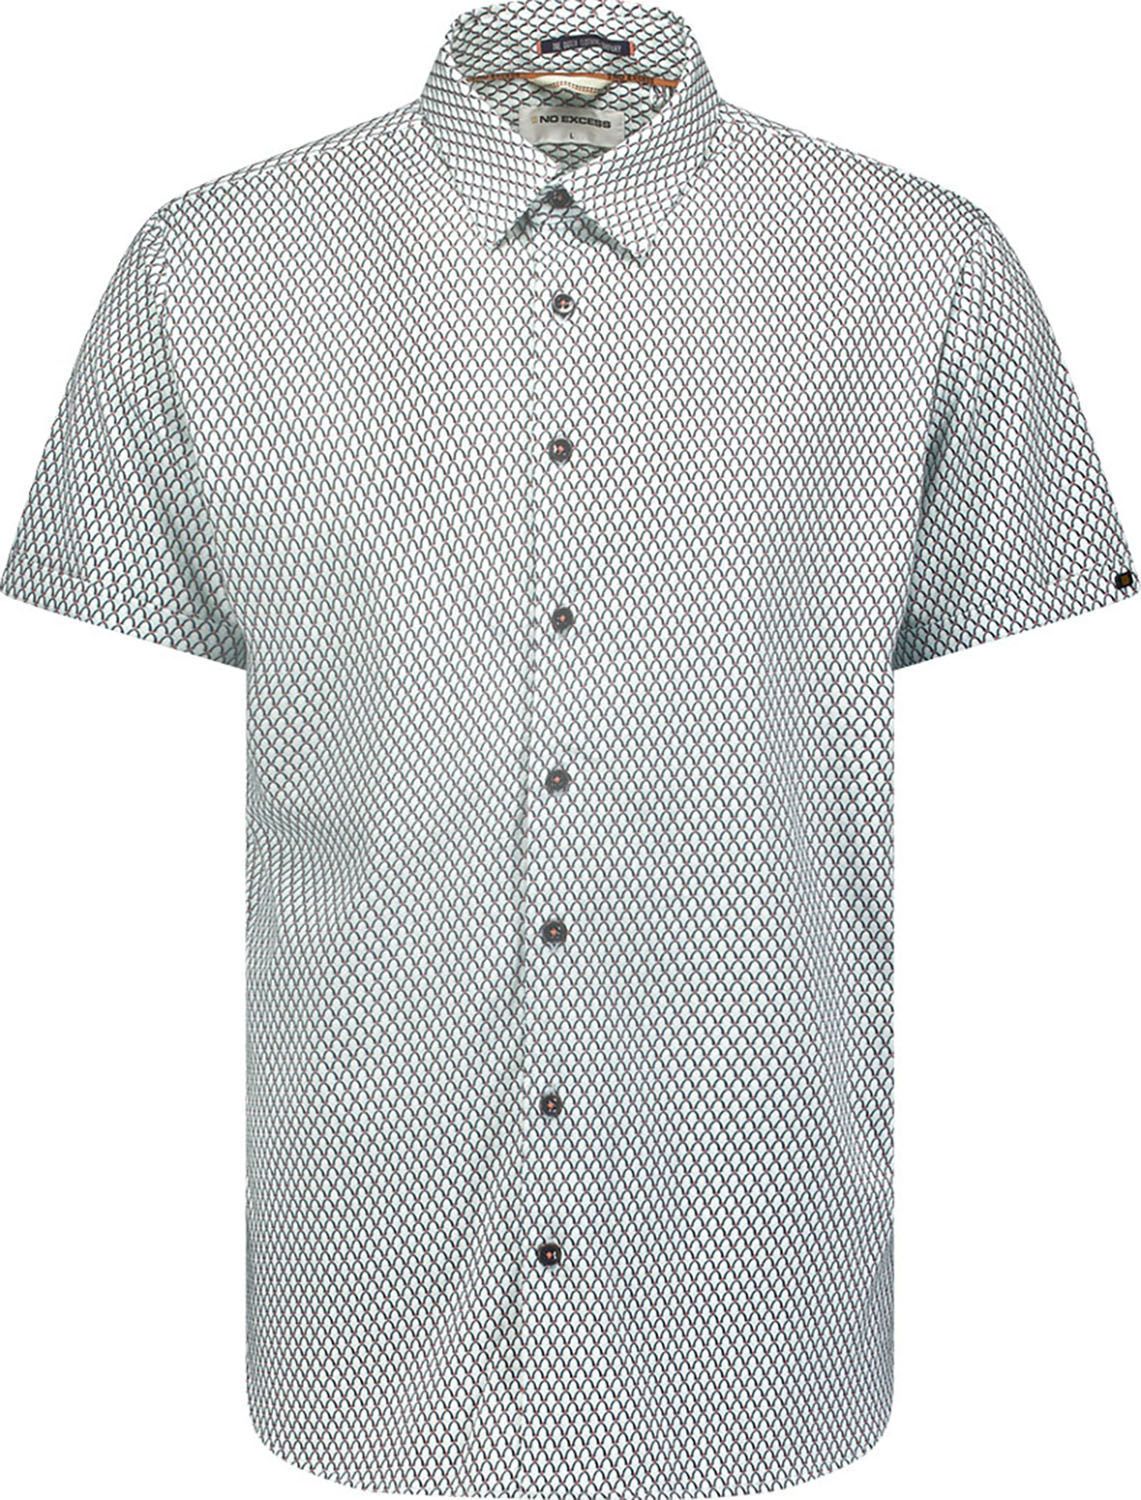 Shirt Short Sleeve Jersey Allover P Groen